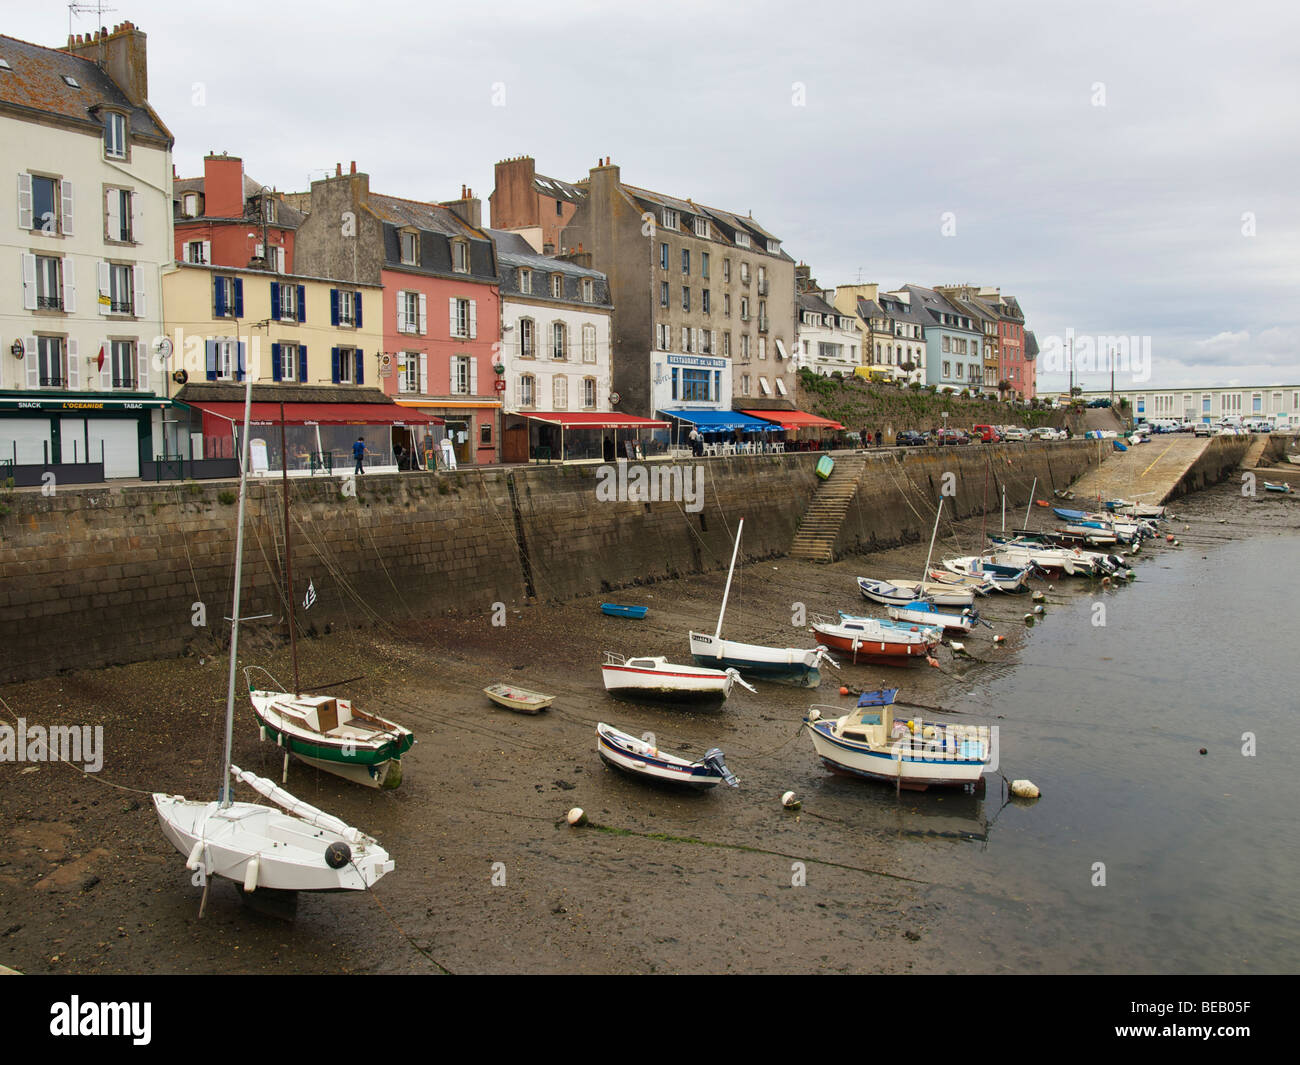 Douarnenez est une ville paisible de pêcheurs en Finistère la pointe de la Bretagne, France Banque D'Images